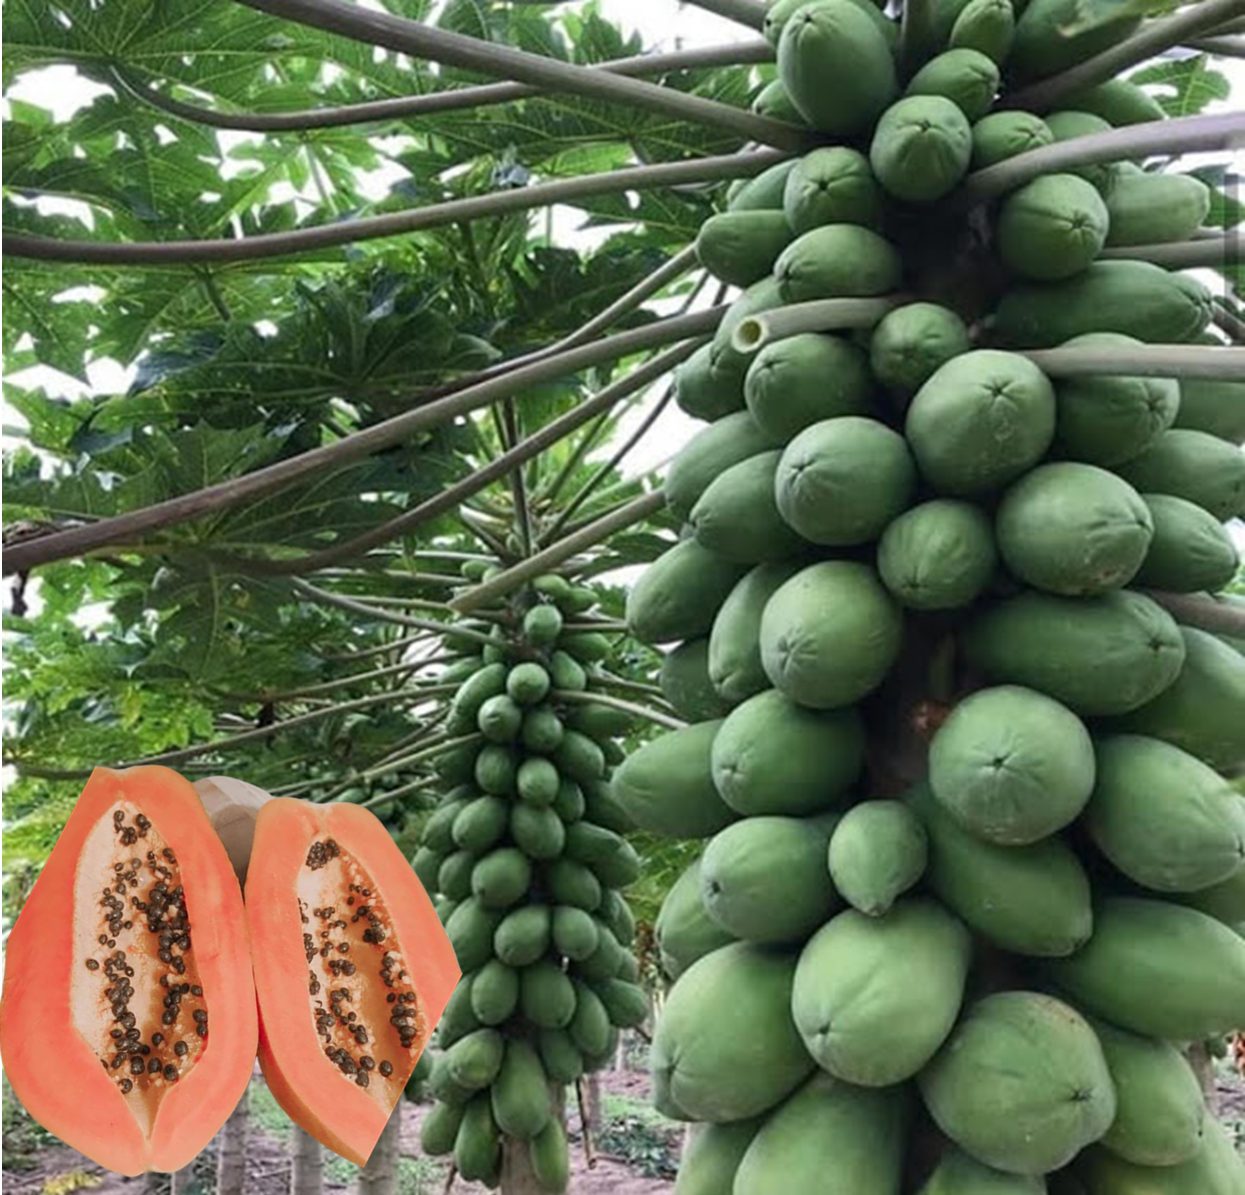 Kinds Of Papayas